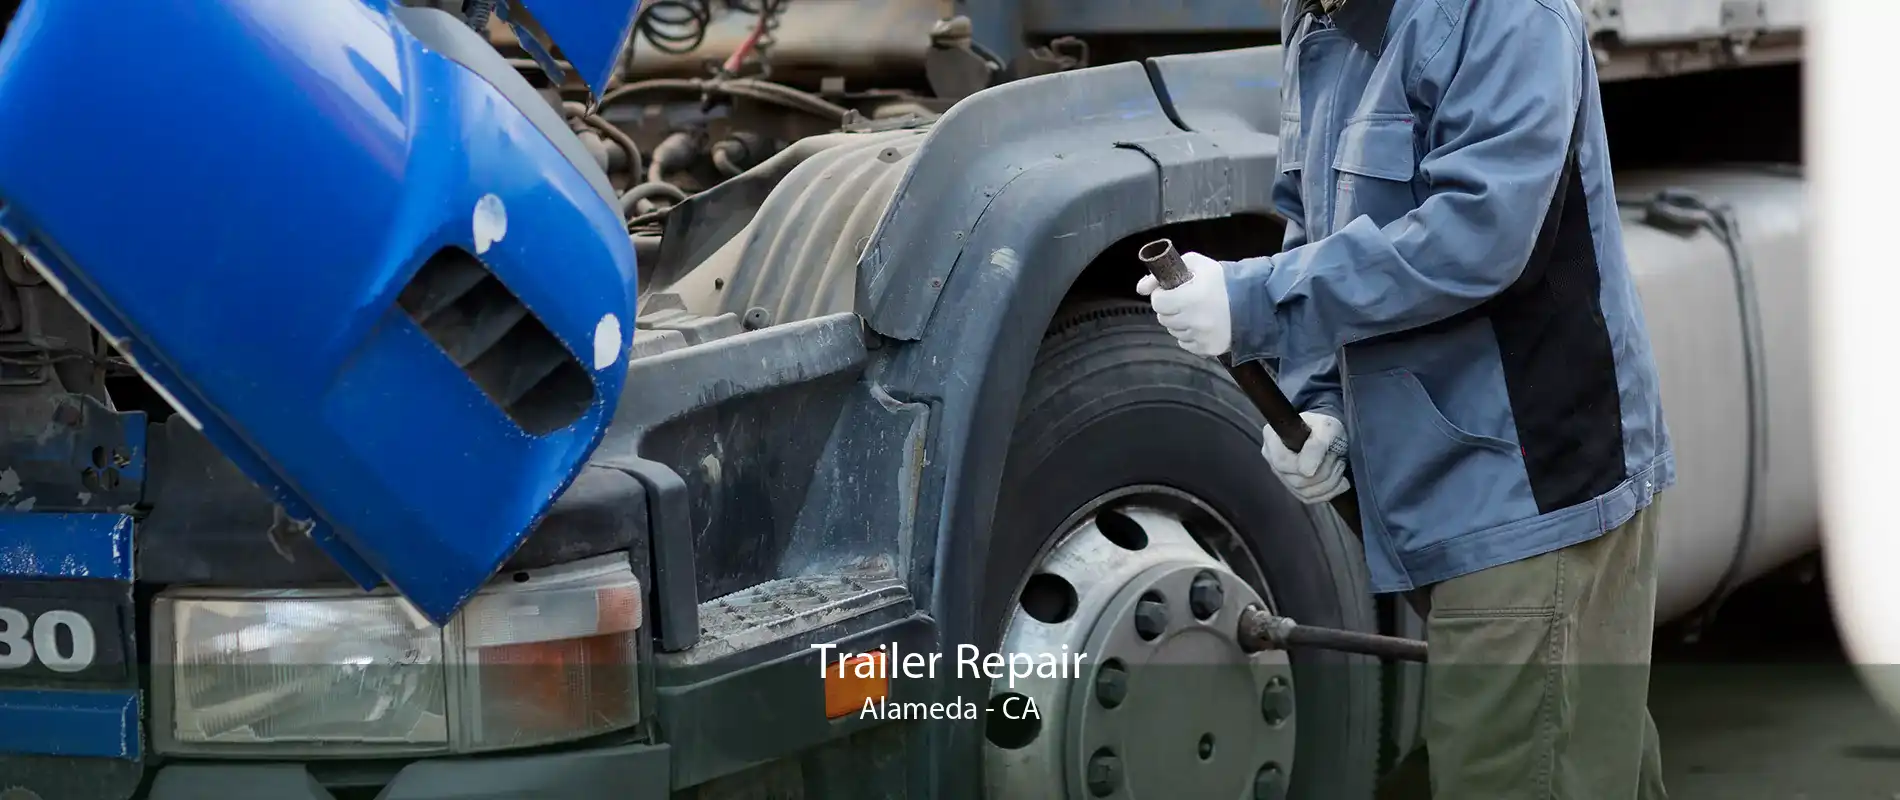 Trailer Repair Alameda - CA